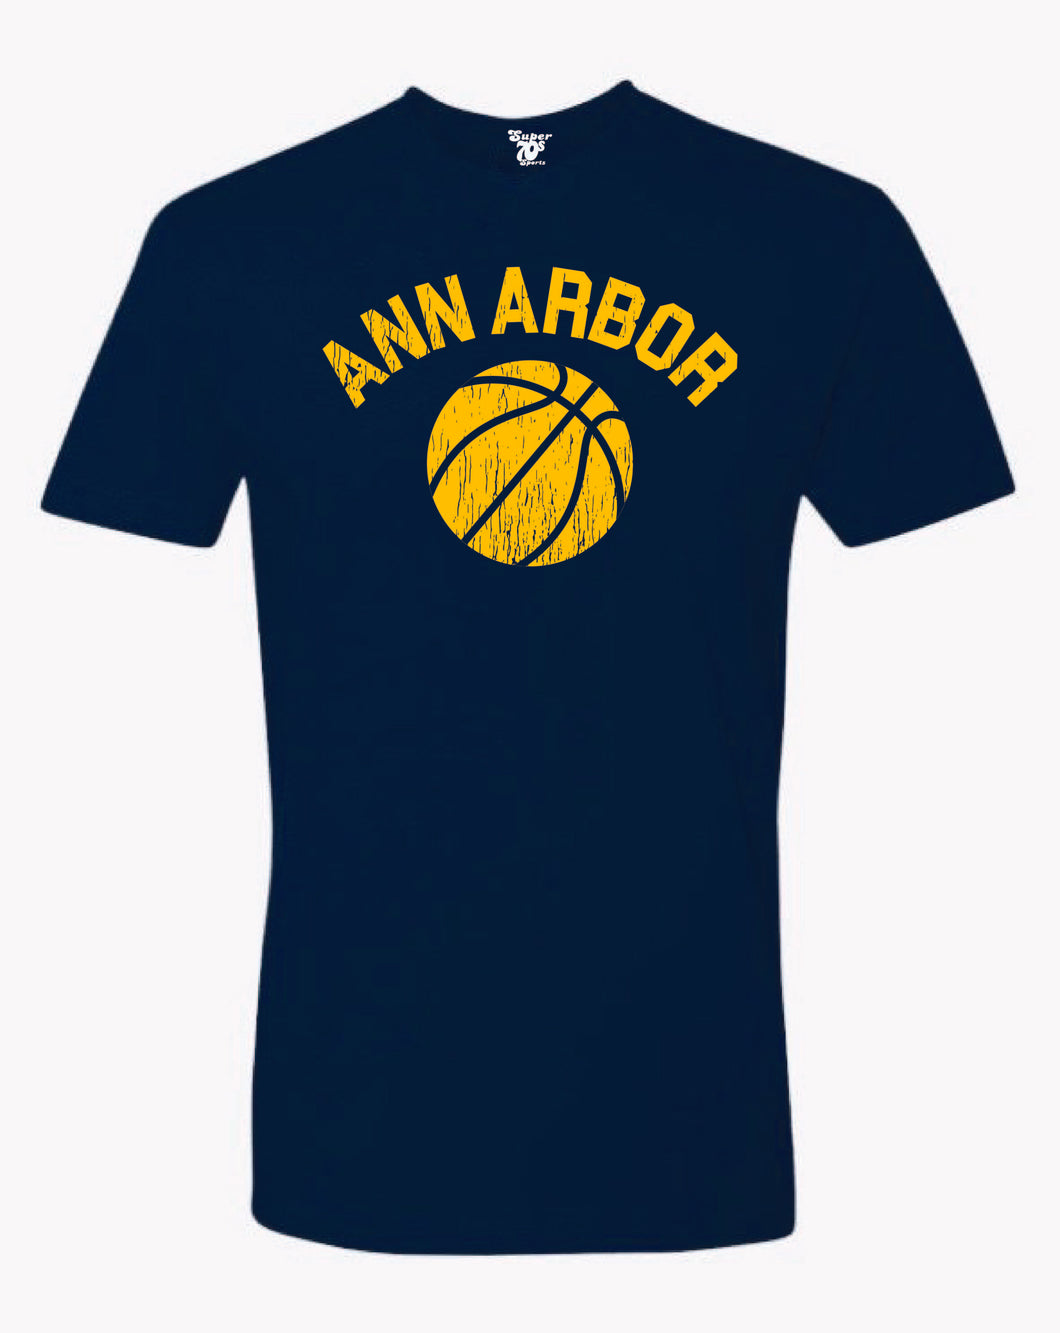 Ann Arbor Basketball Tee